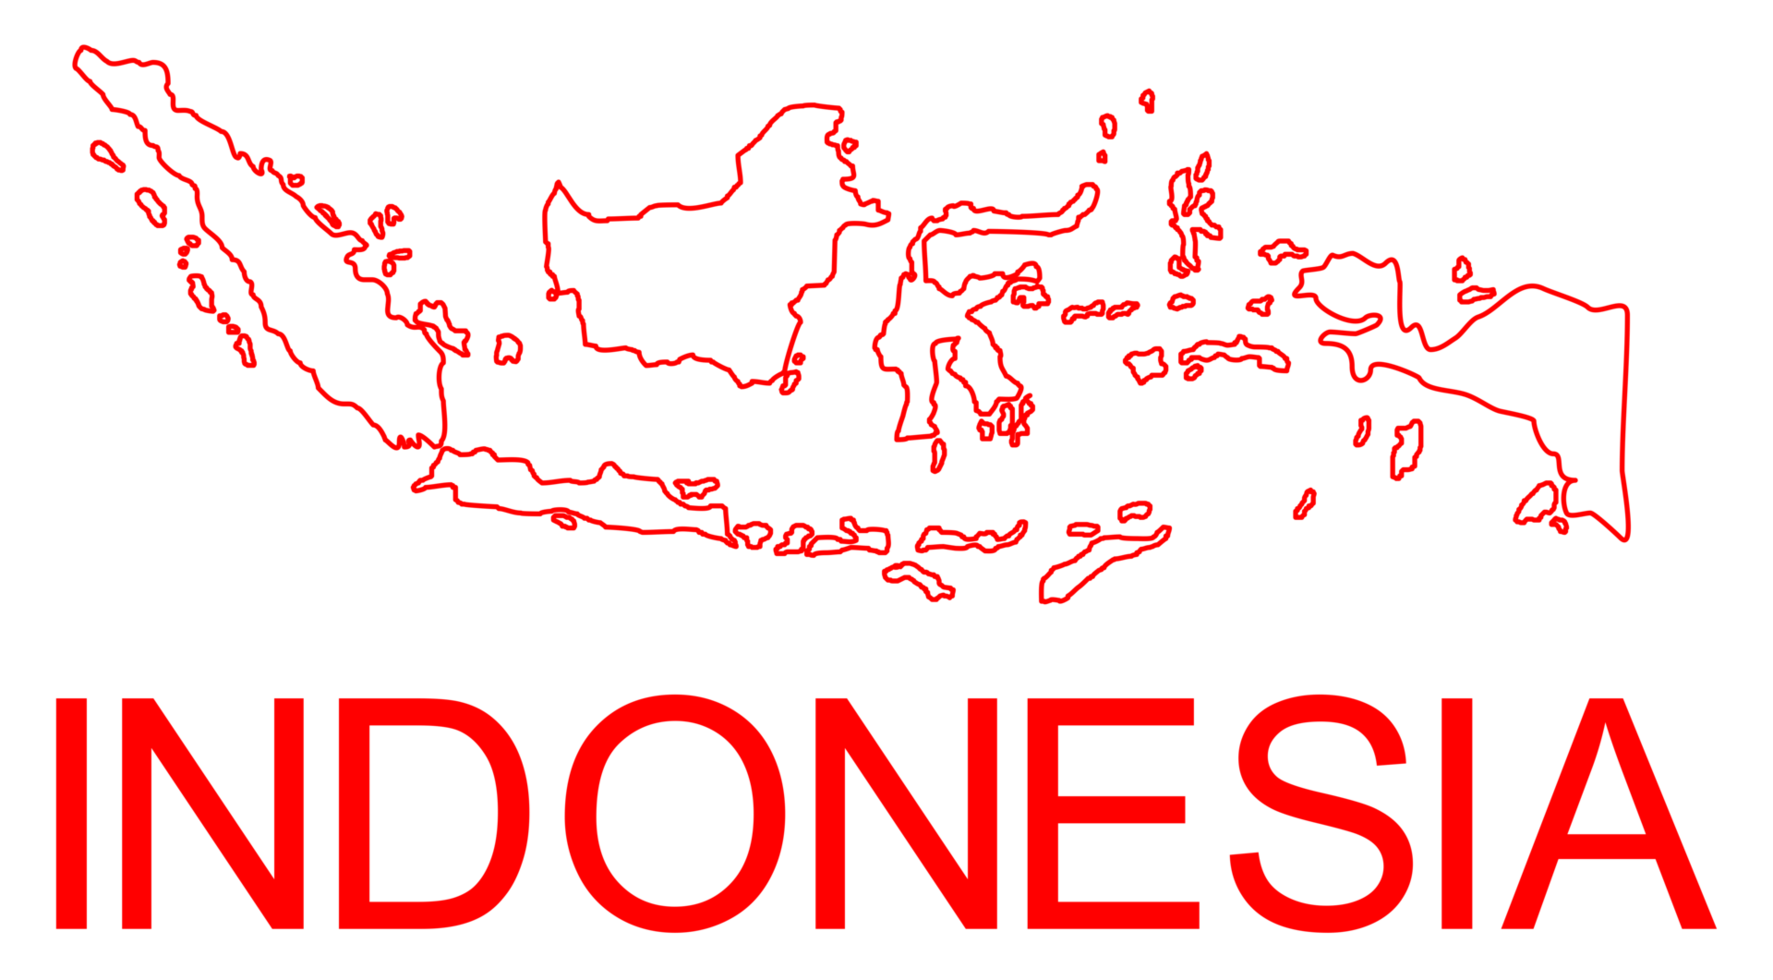 mapa da indonésia para aplicativo, ilustração de arte, site, pictograma, infográfico ou elemento de design gráfico. formato png